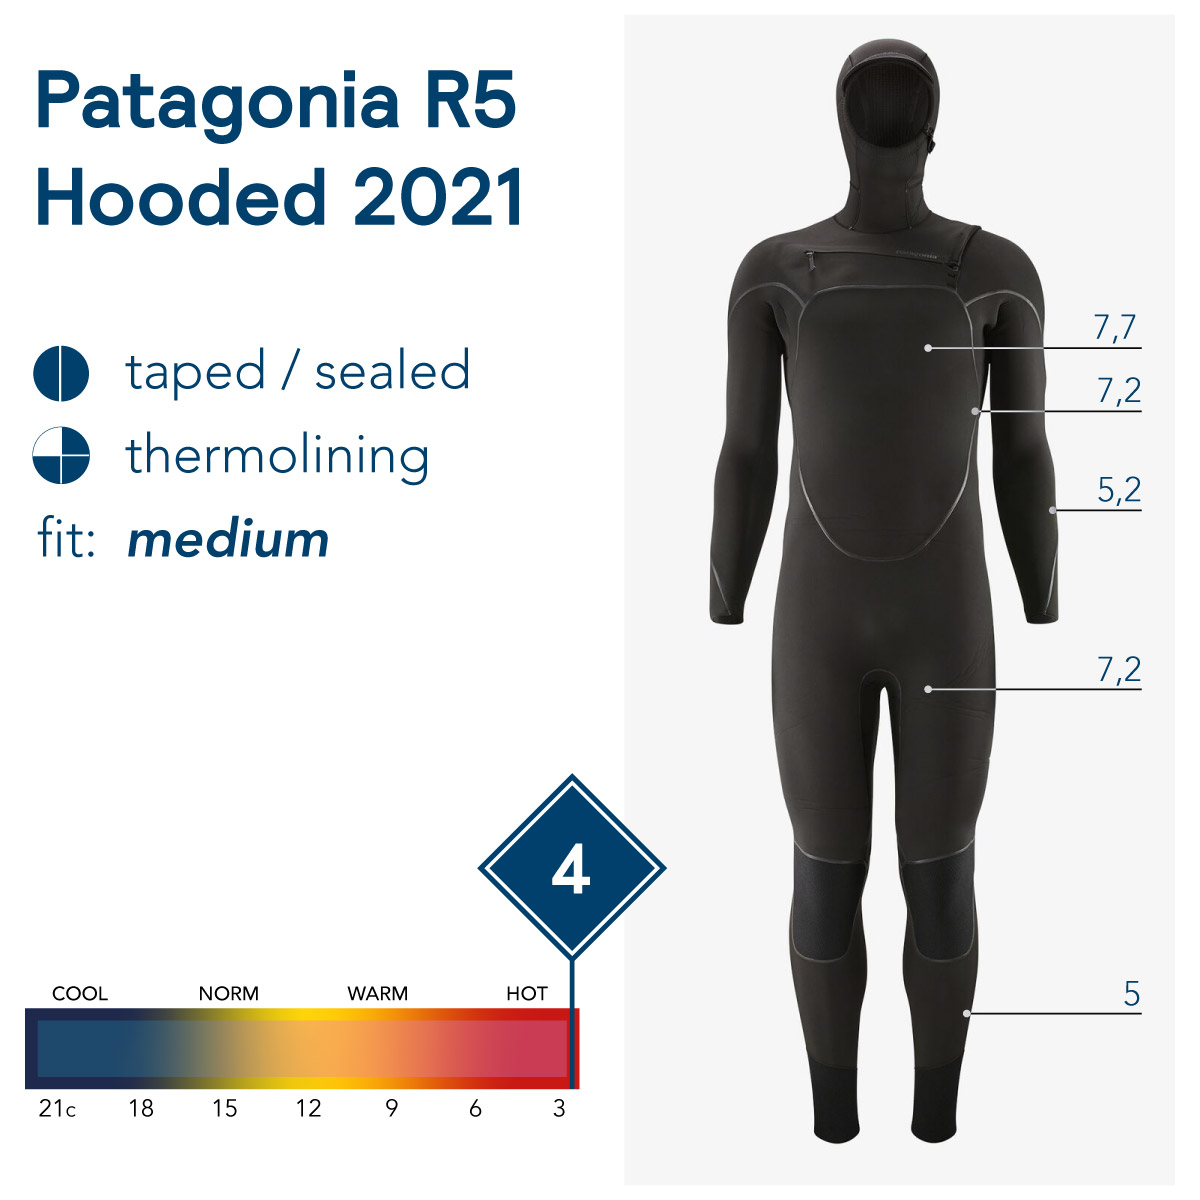 Patagonia R5 Hooded Versus